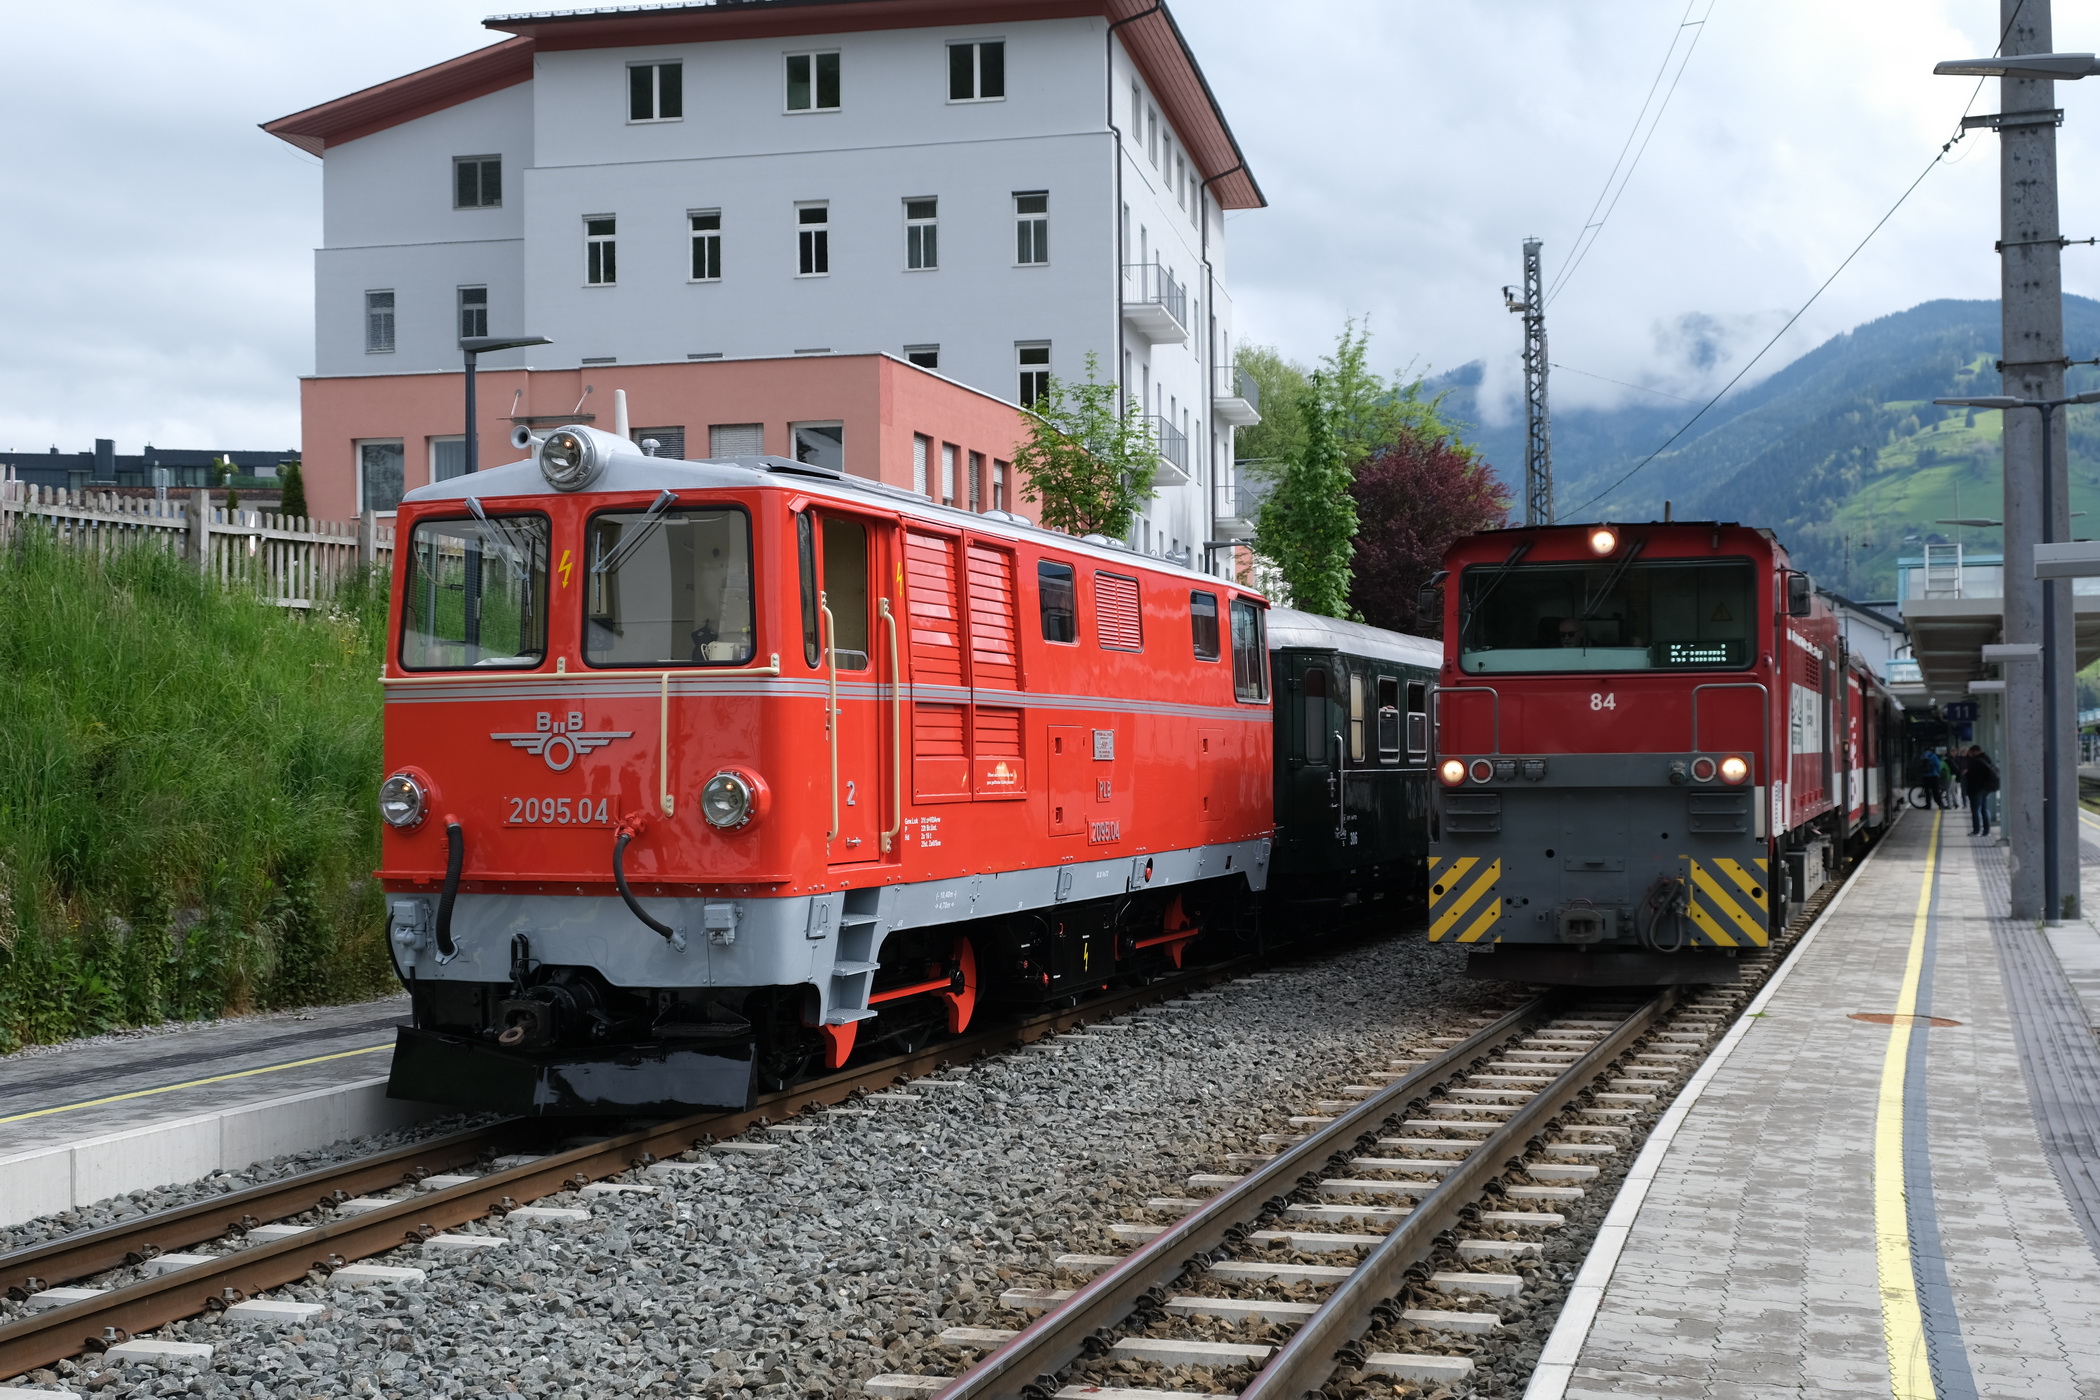 Ganzzug mit BB 2095.04 - links - und moderner Diesellok Vs Nr. 84 der Pinzgauer Lokalbahn - rechts. 